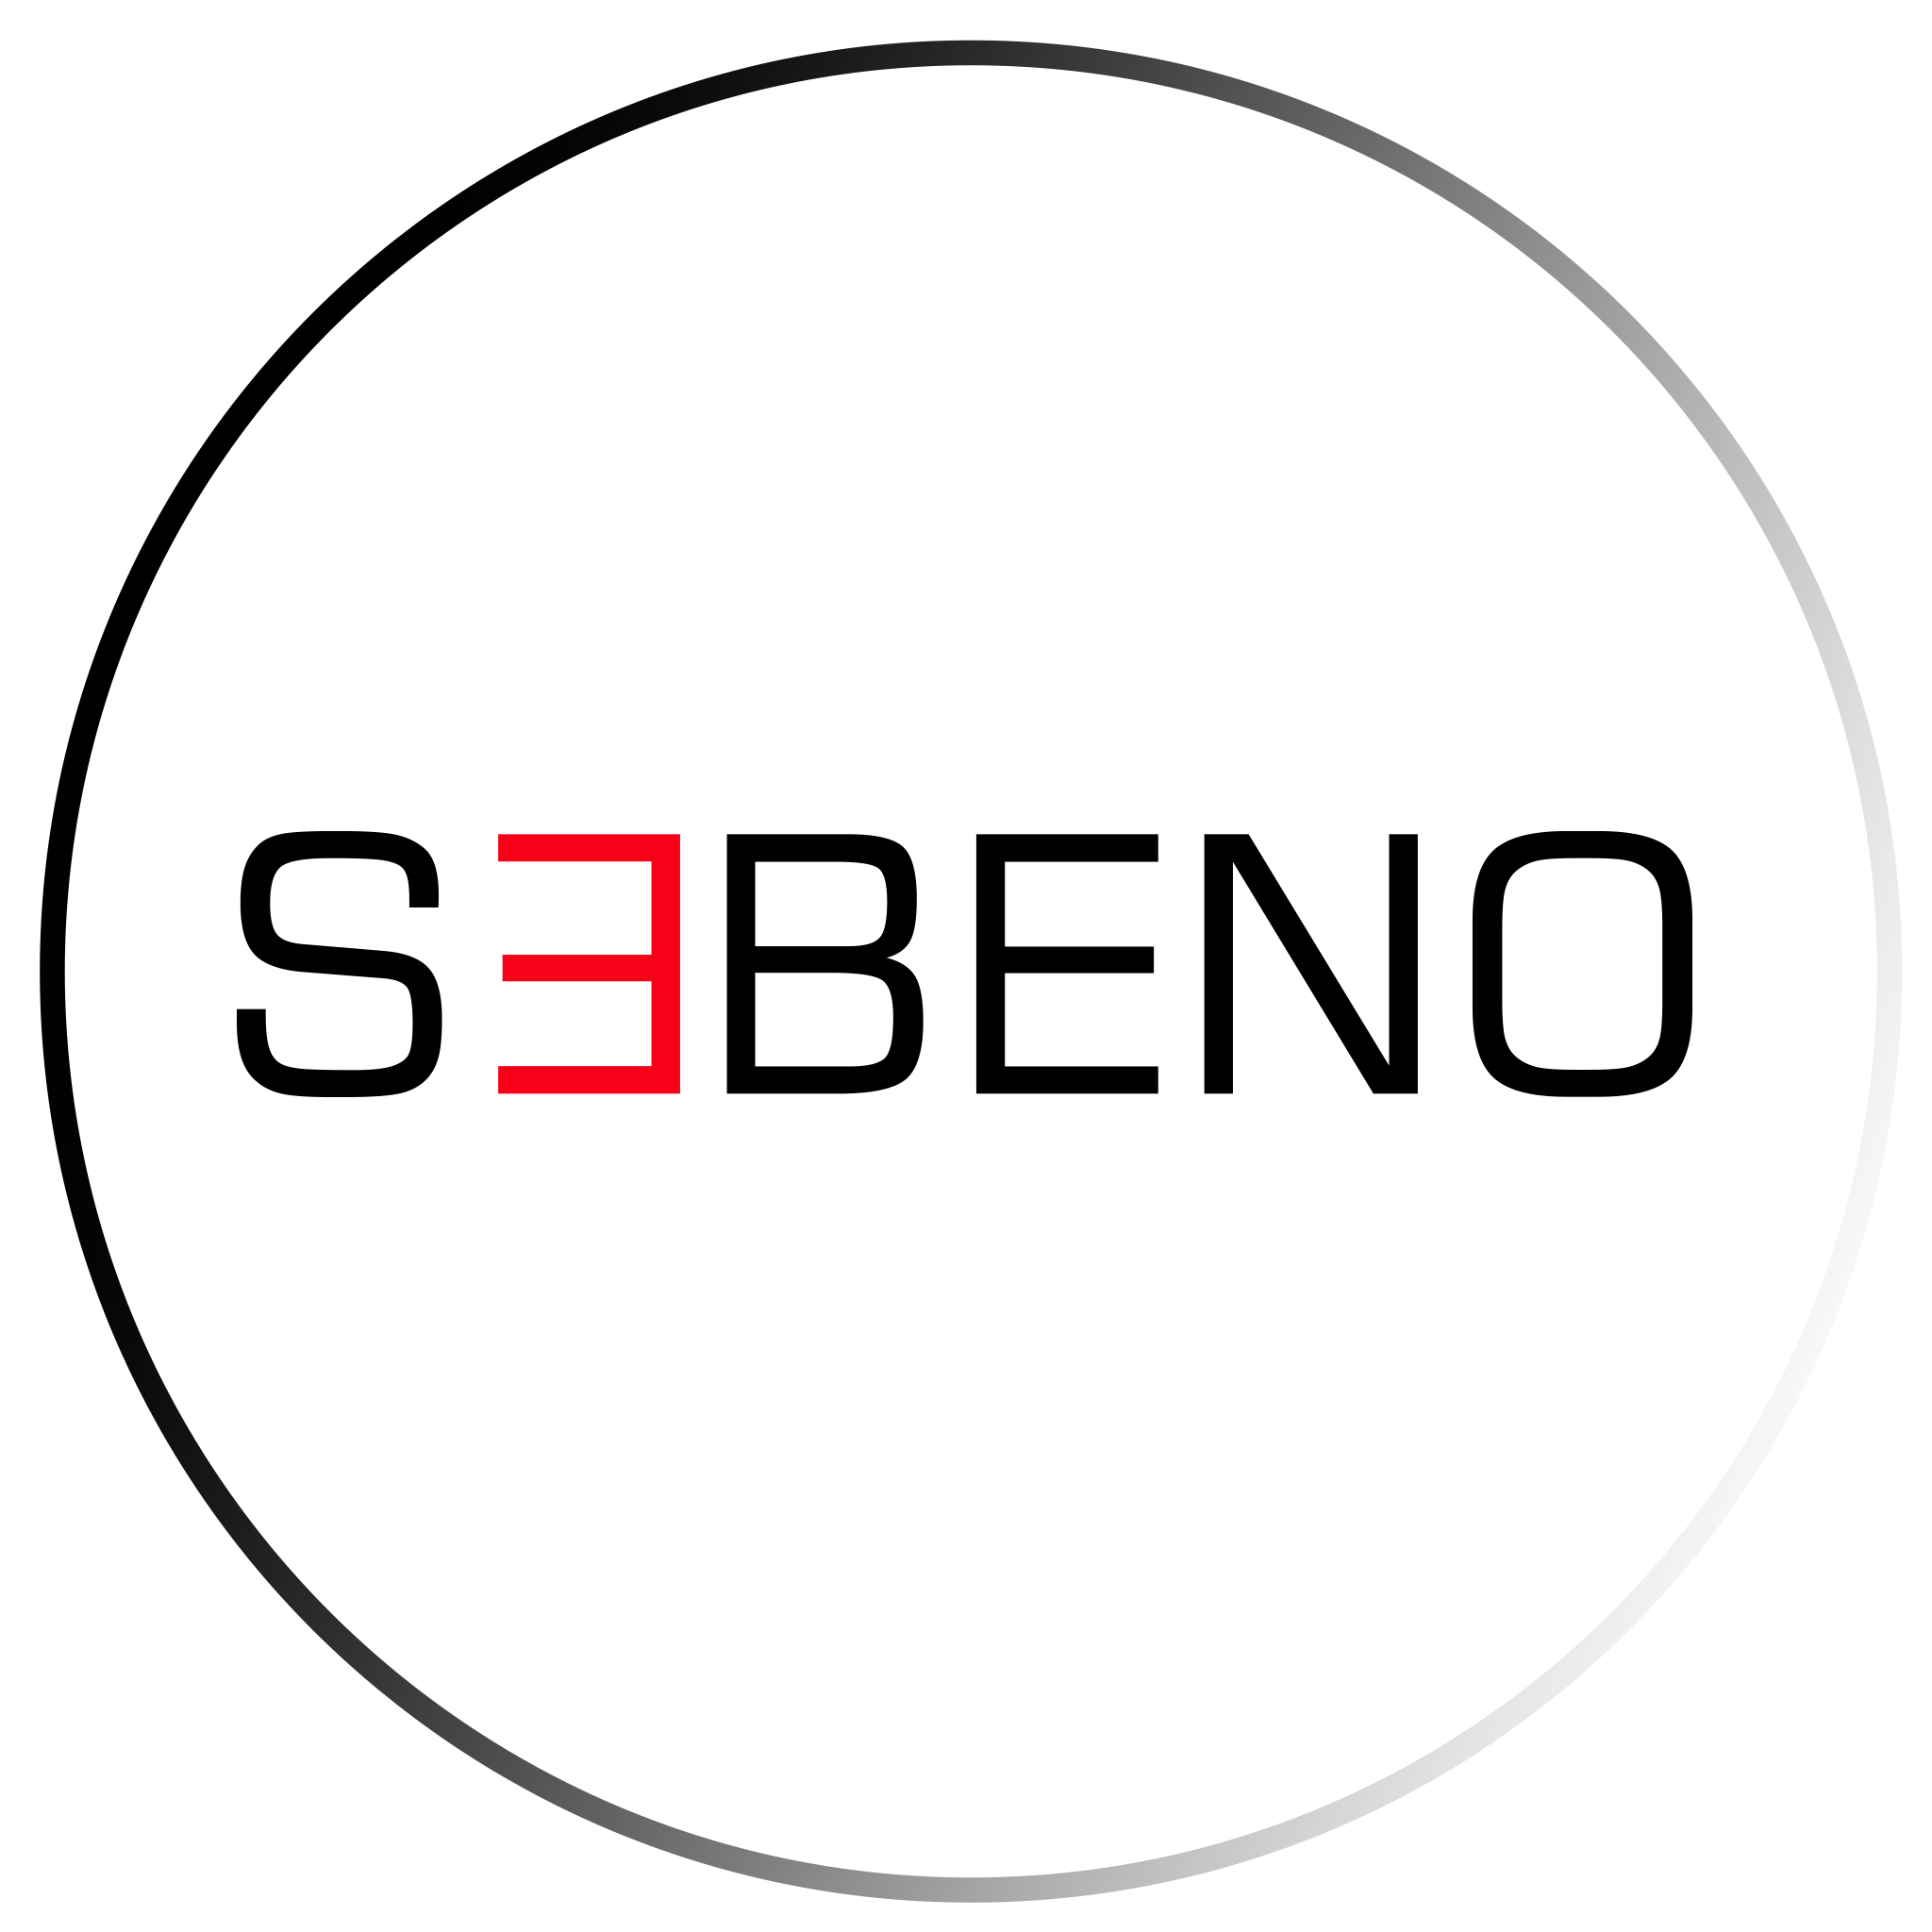 SEBENO FC